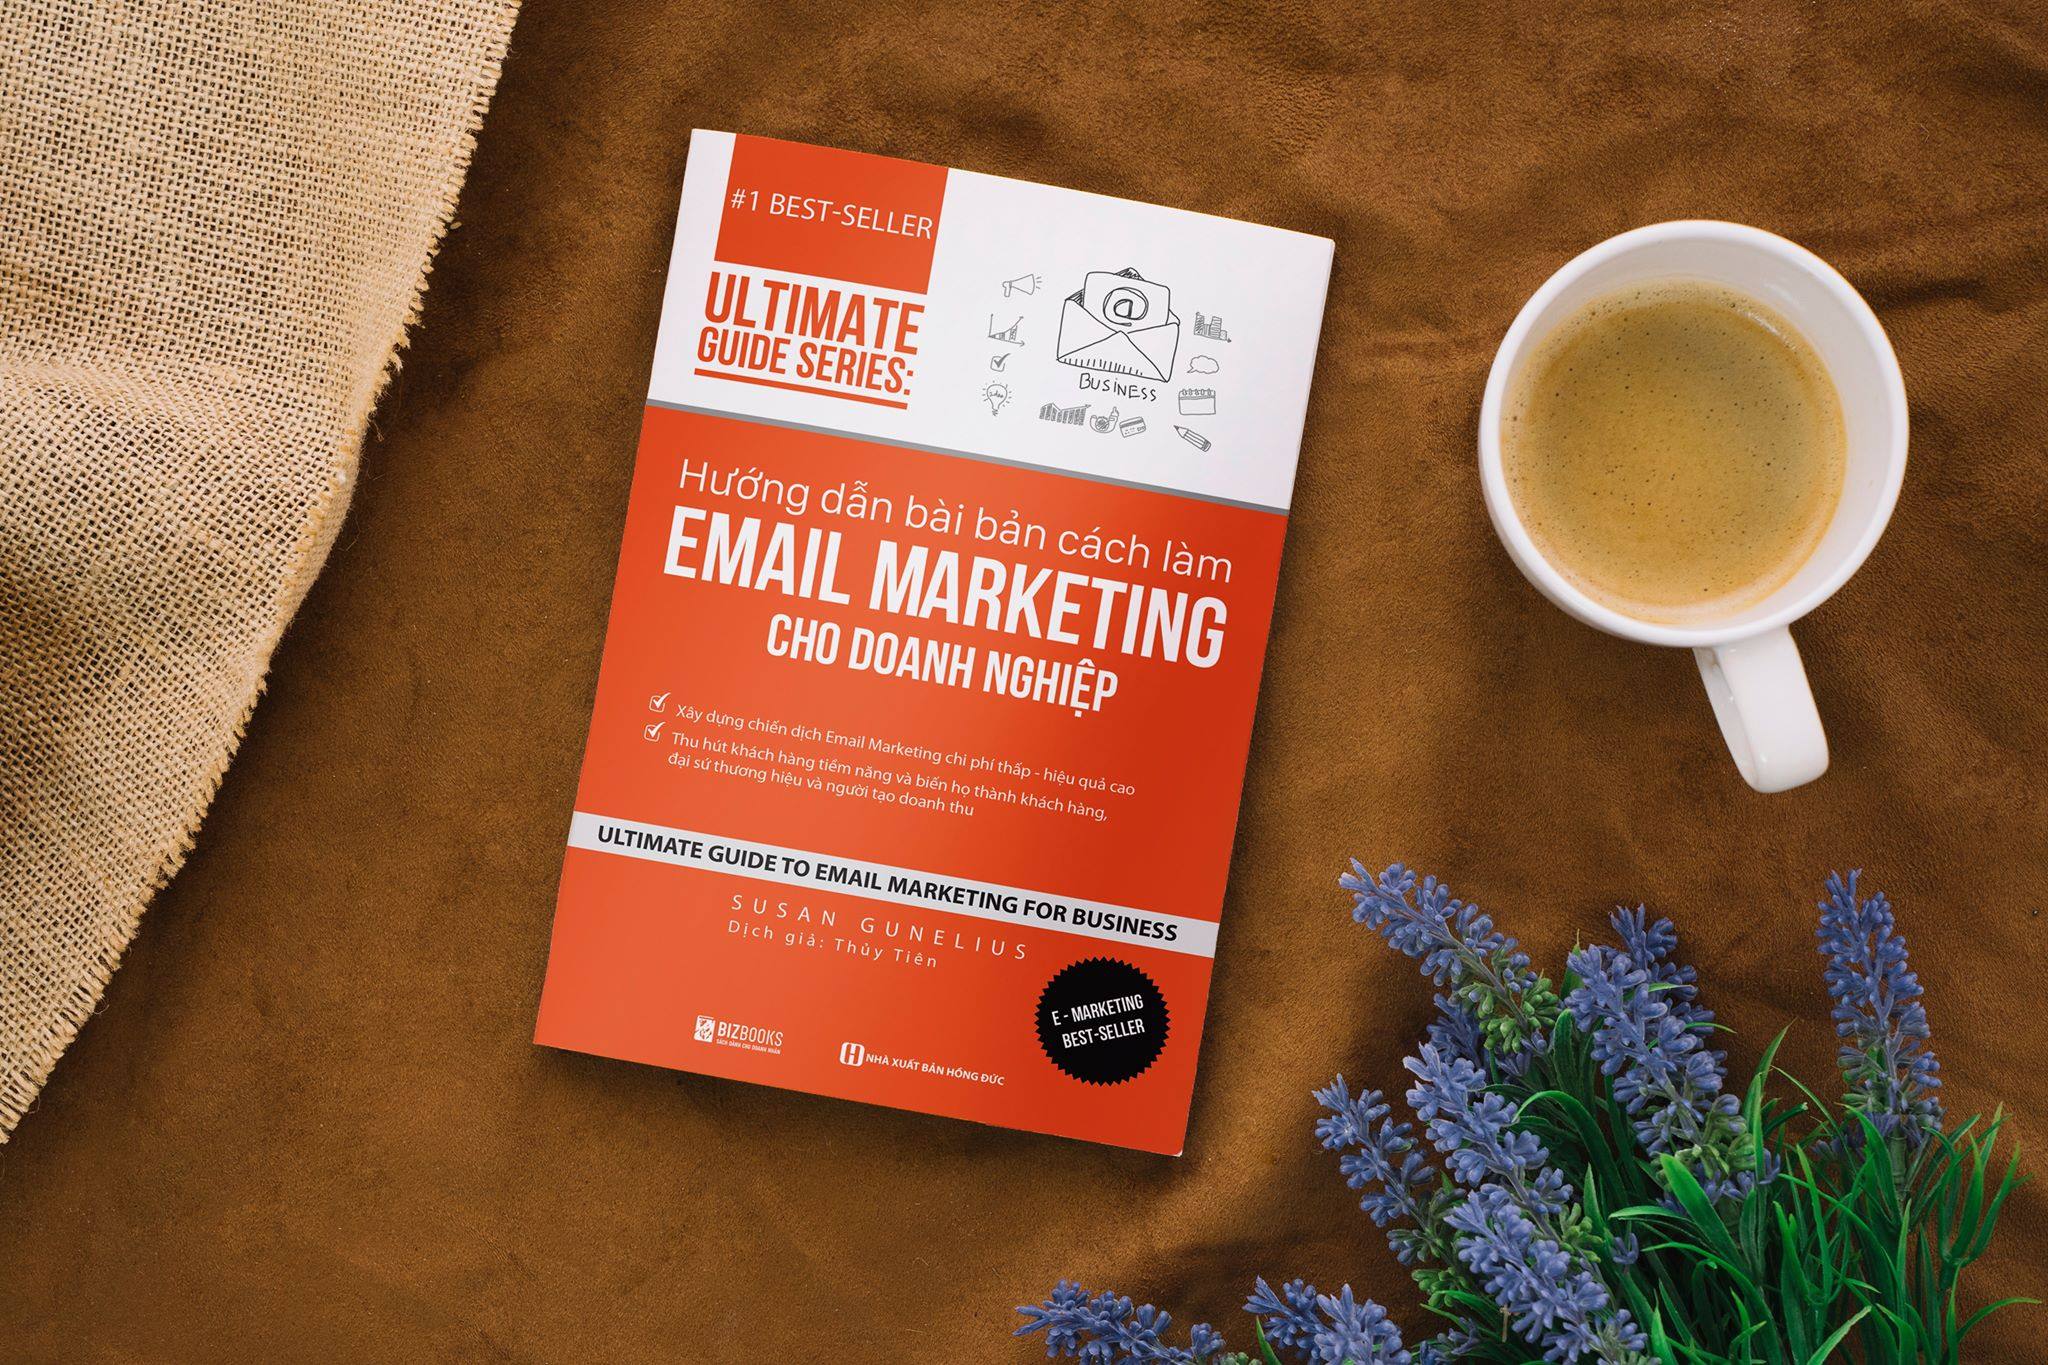 Hướng dẫn bài bản cách làm Email Marketing cho doanh nghiệp | Ultimate Guide Series 7